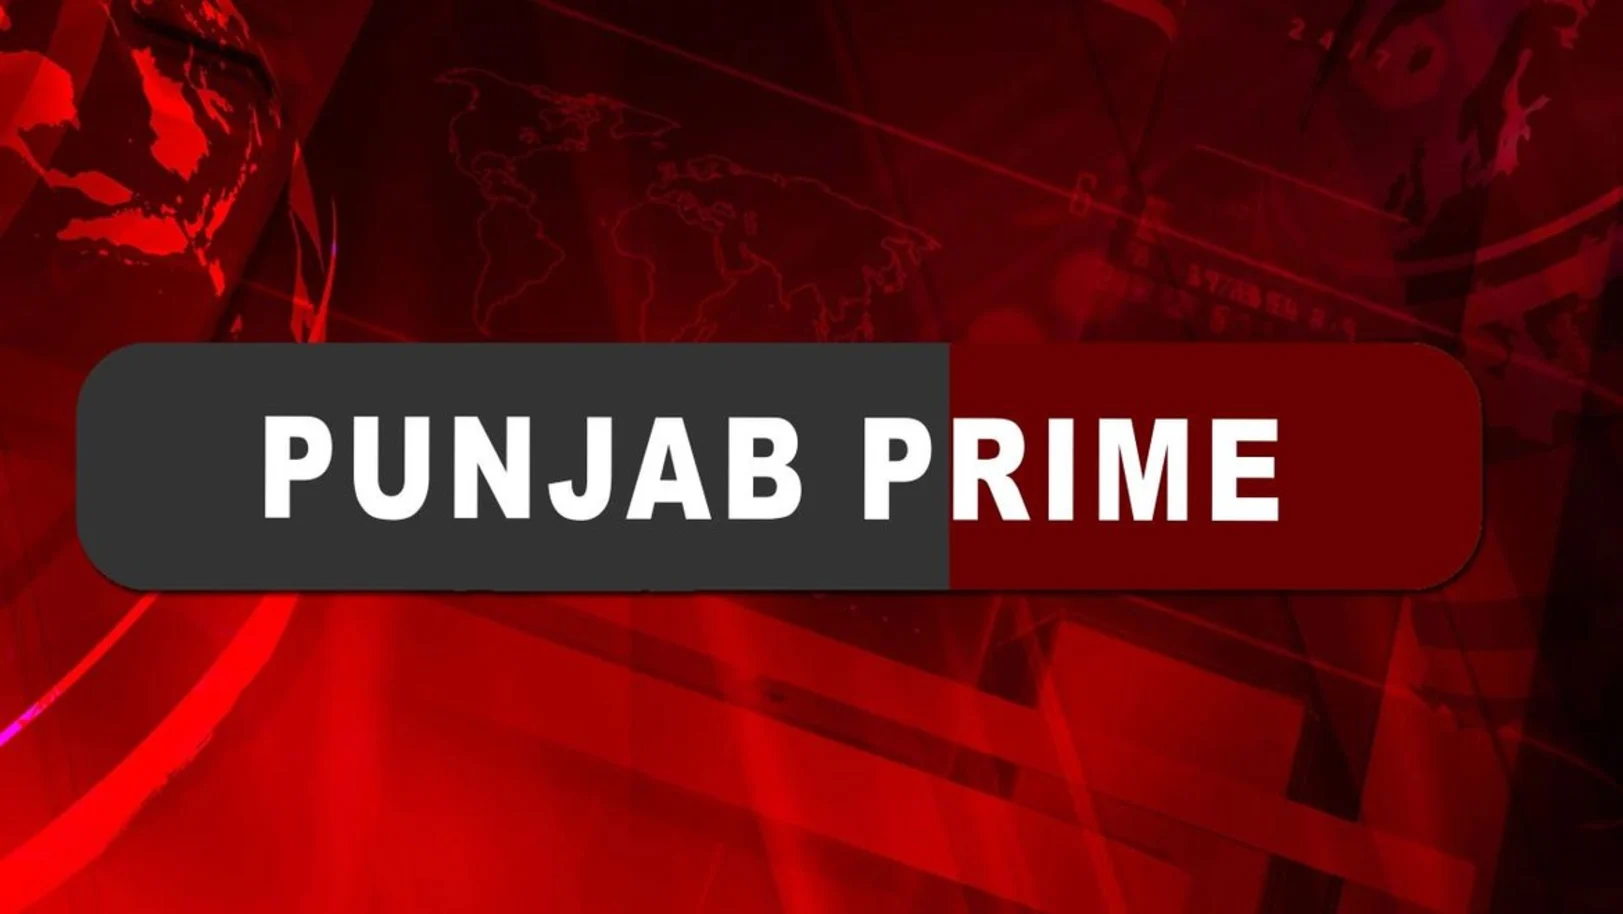 Punjab Prime Streaming Now On Zee Punjab Haryana Himachal Pradesh